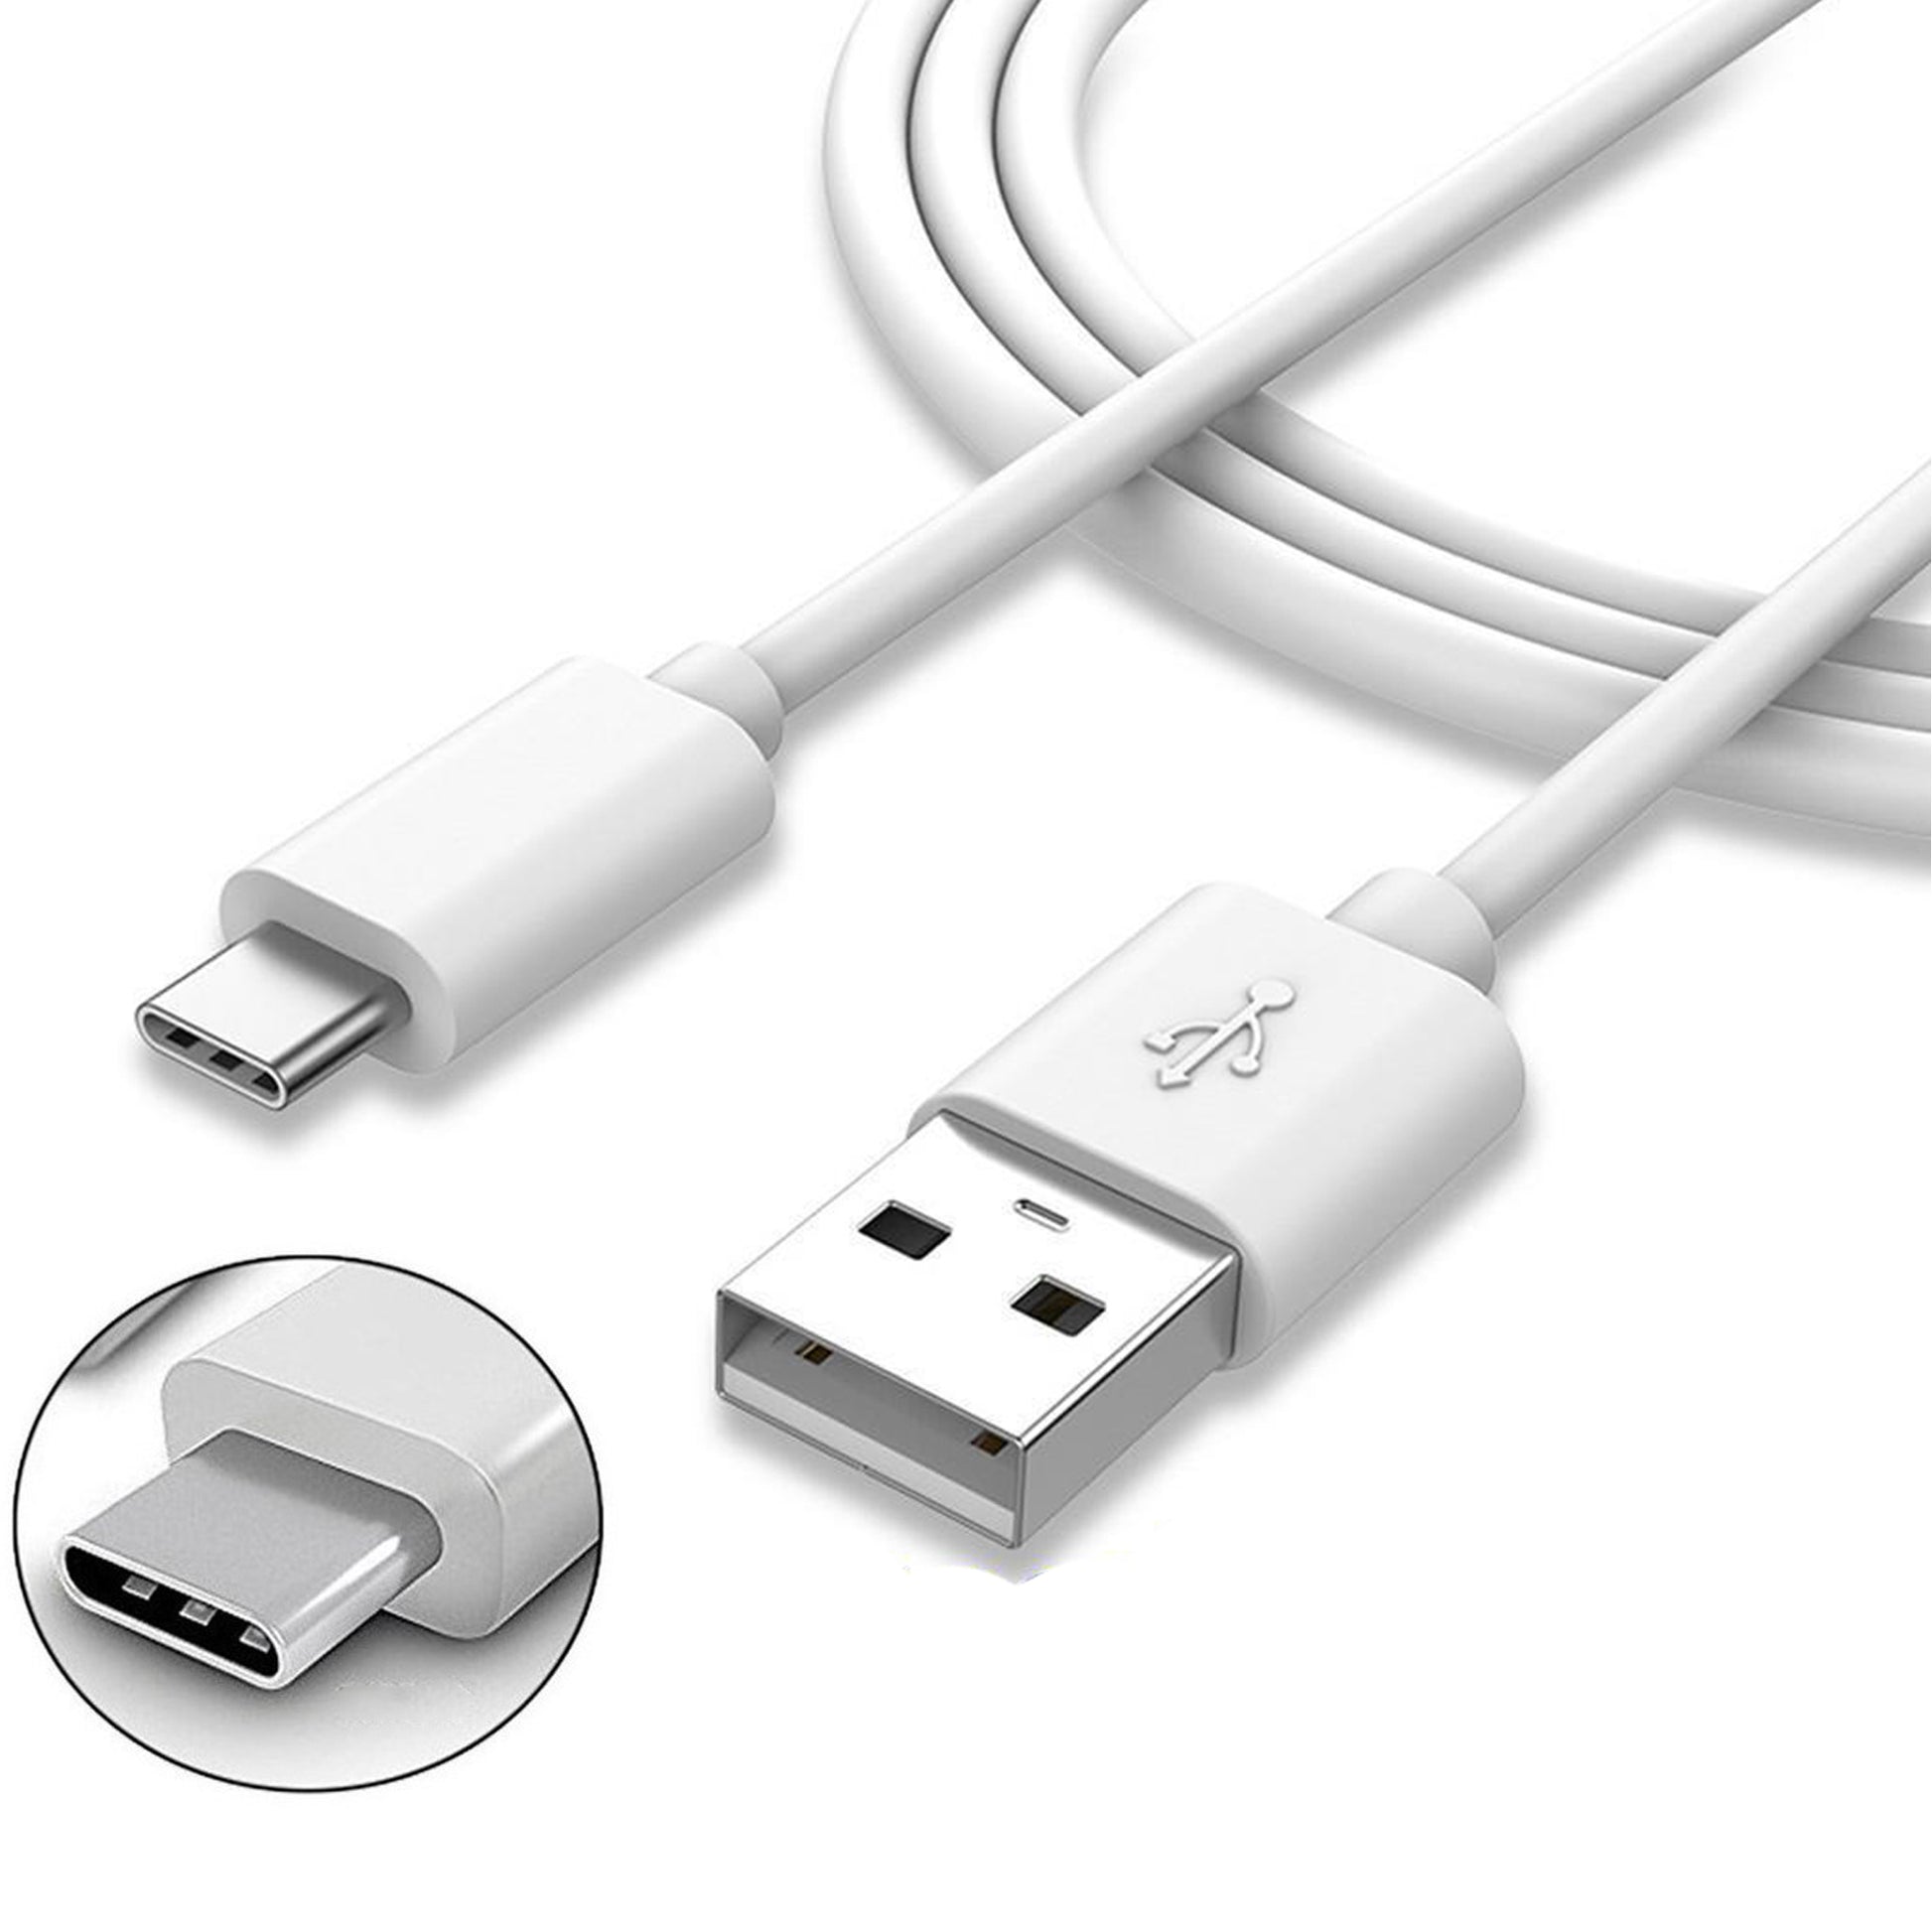 Cable de datos y carga tipo C – USB 2.0